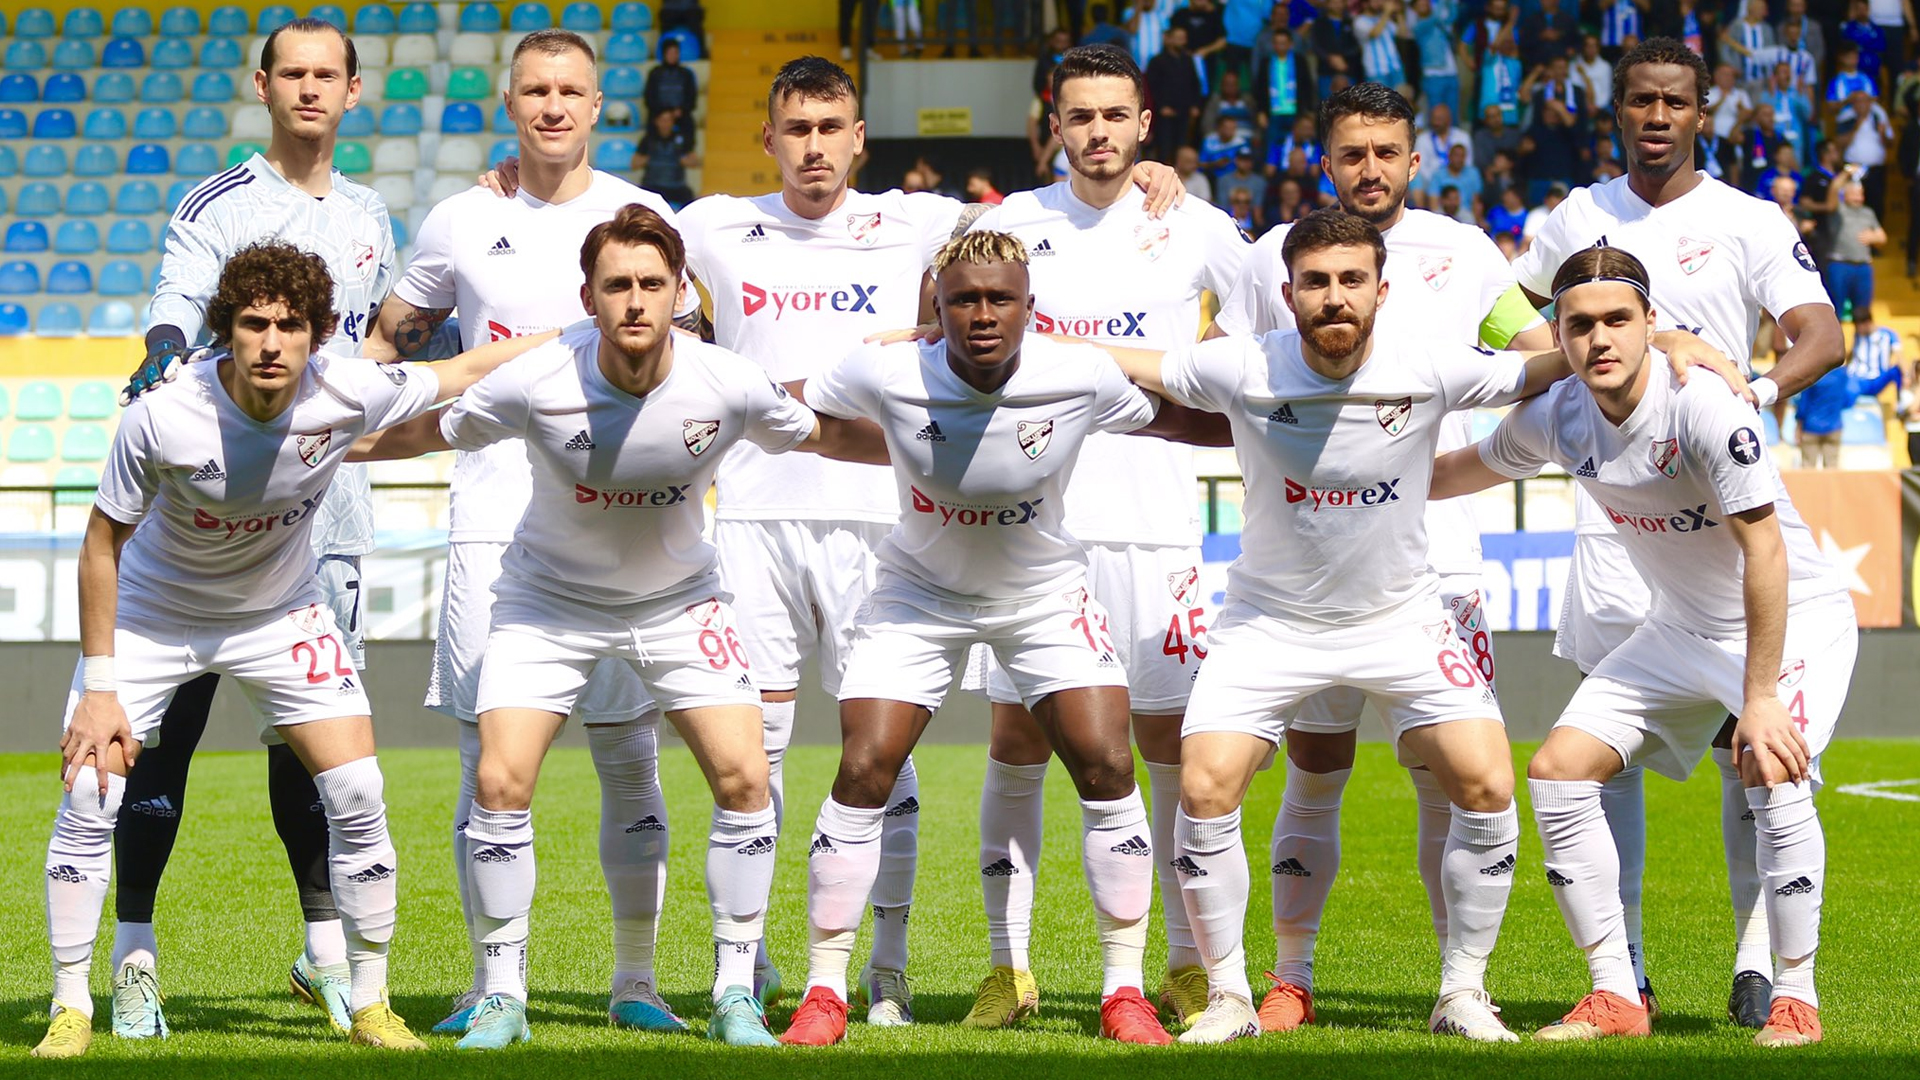 38. Hafta: Erzurumspor FK 2-0 DyorEX Boluspor